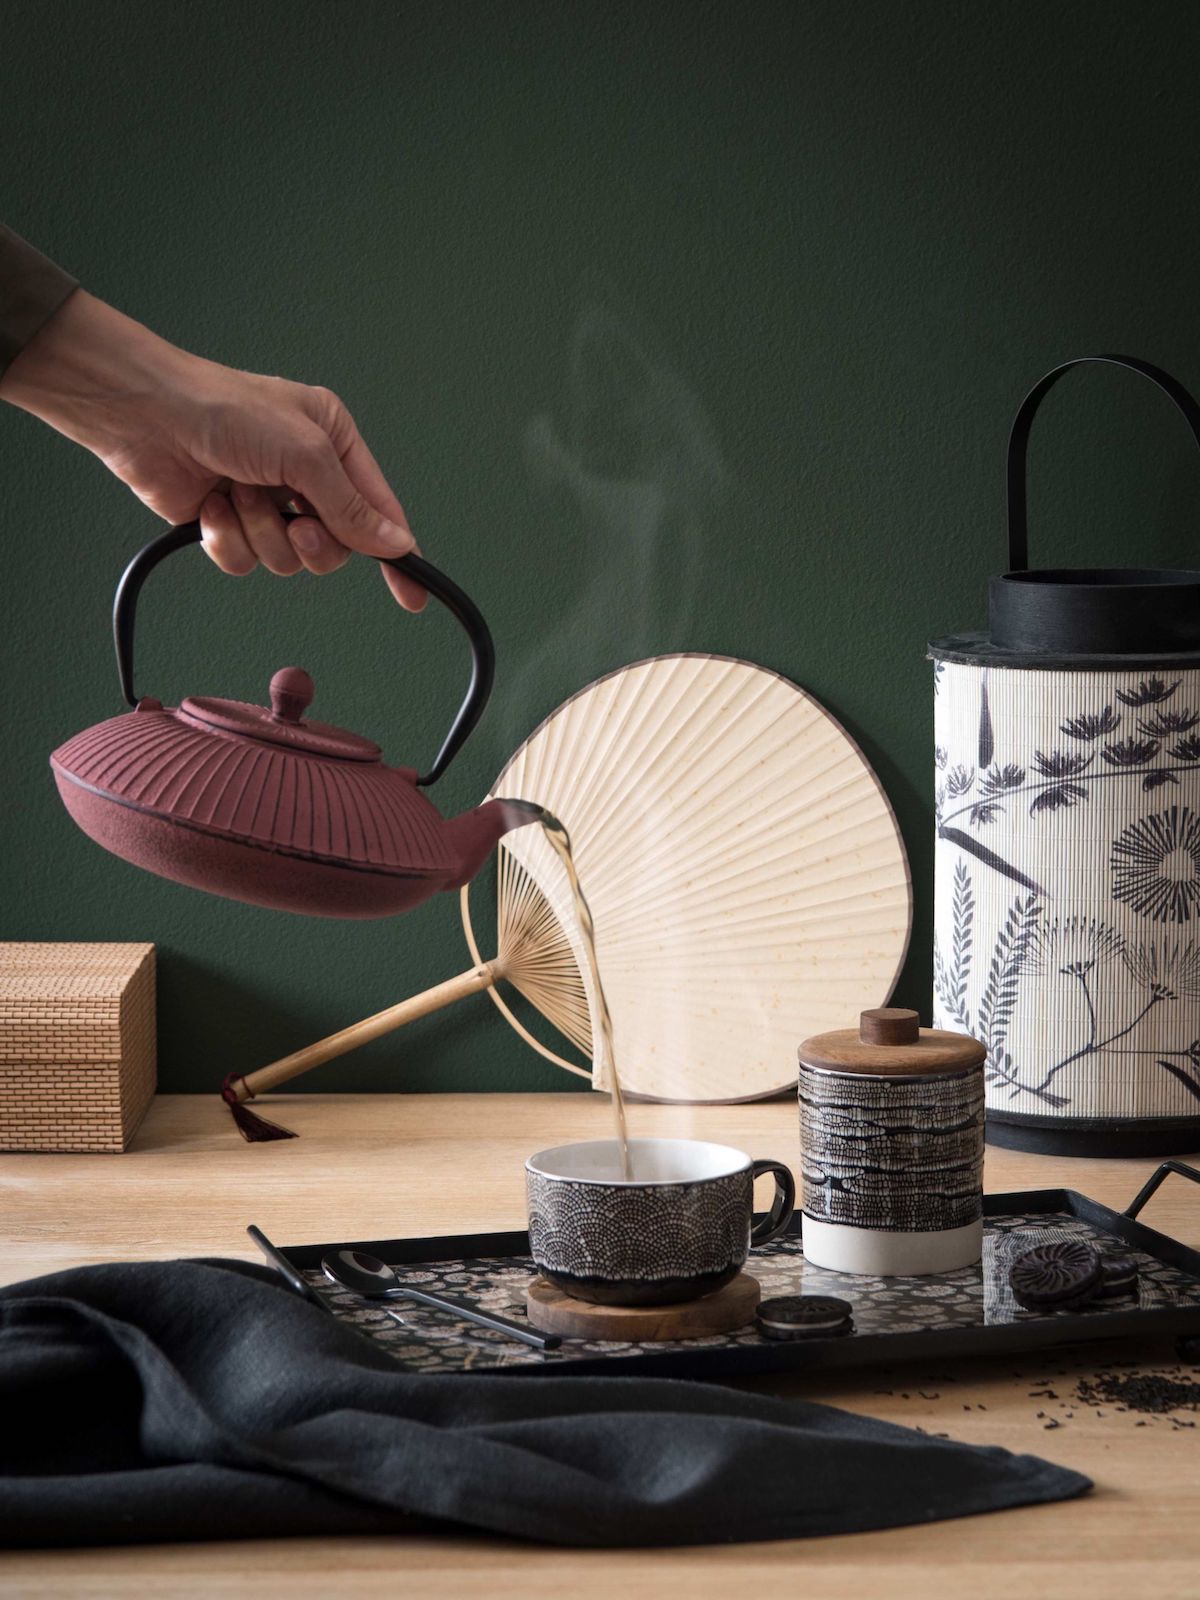 service à thé japonais rouge terracotta éventail en papier rond idée décoration intérieure